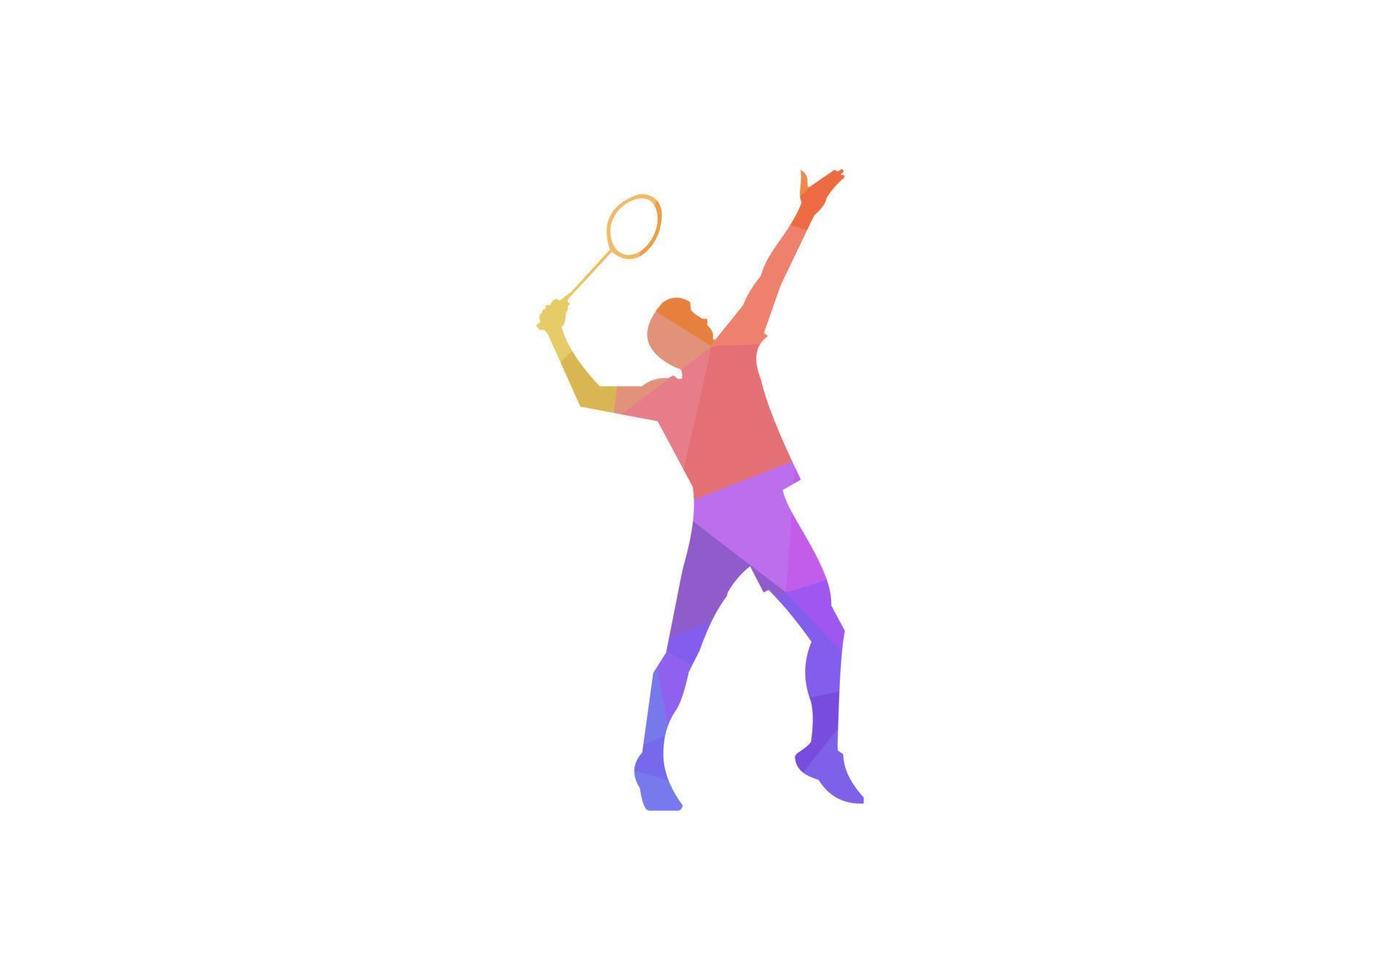 badminton giocatore giovane uomo nel silhouette isolato vettore